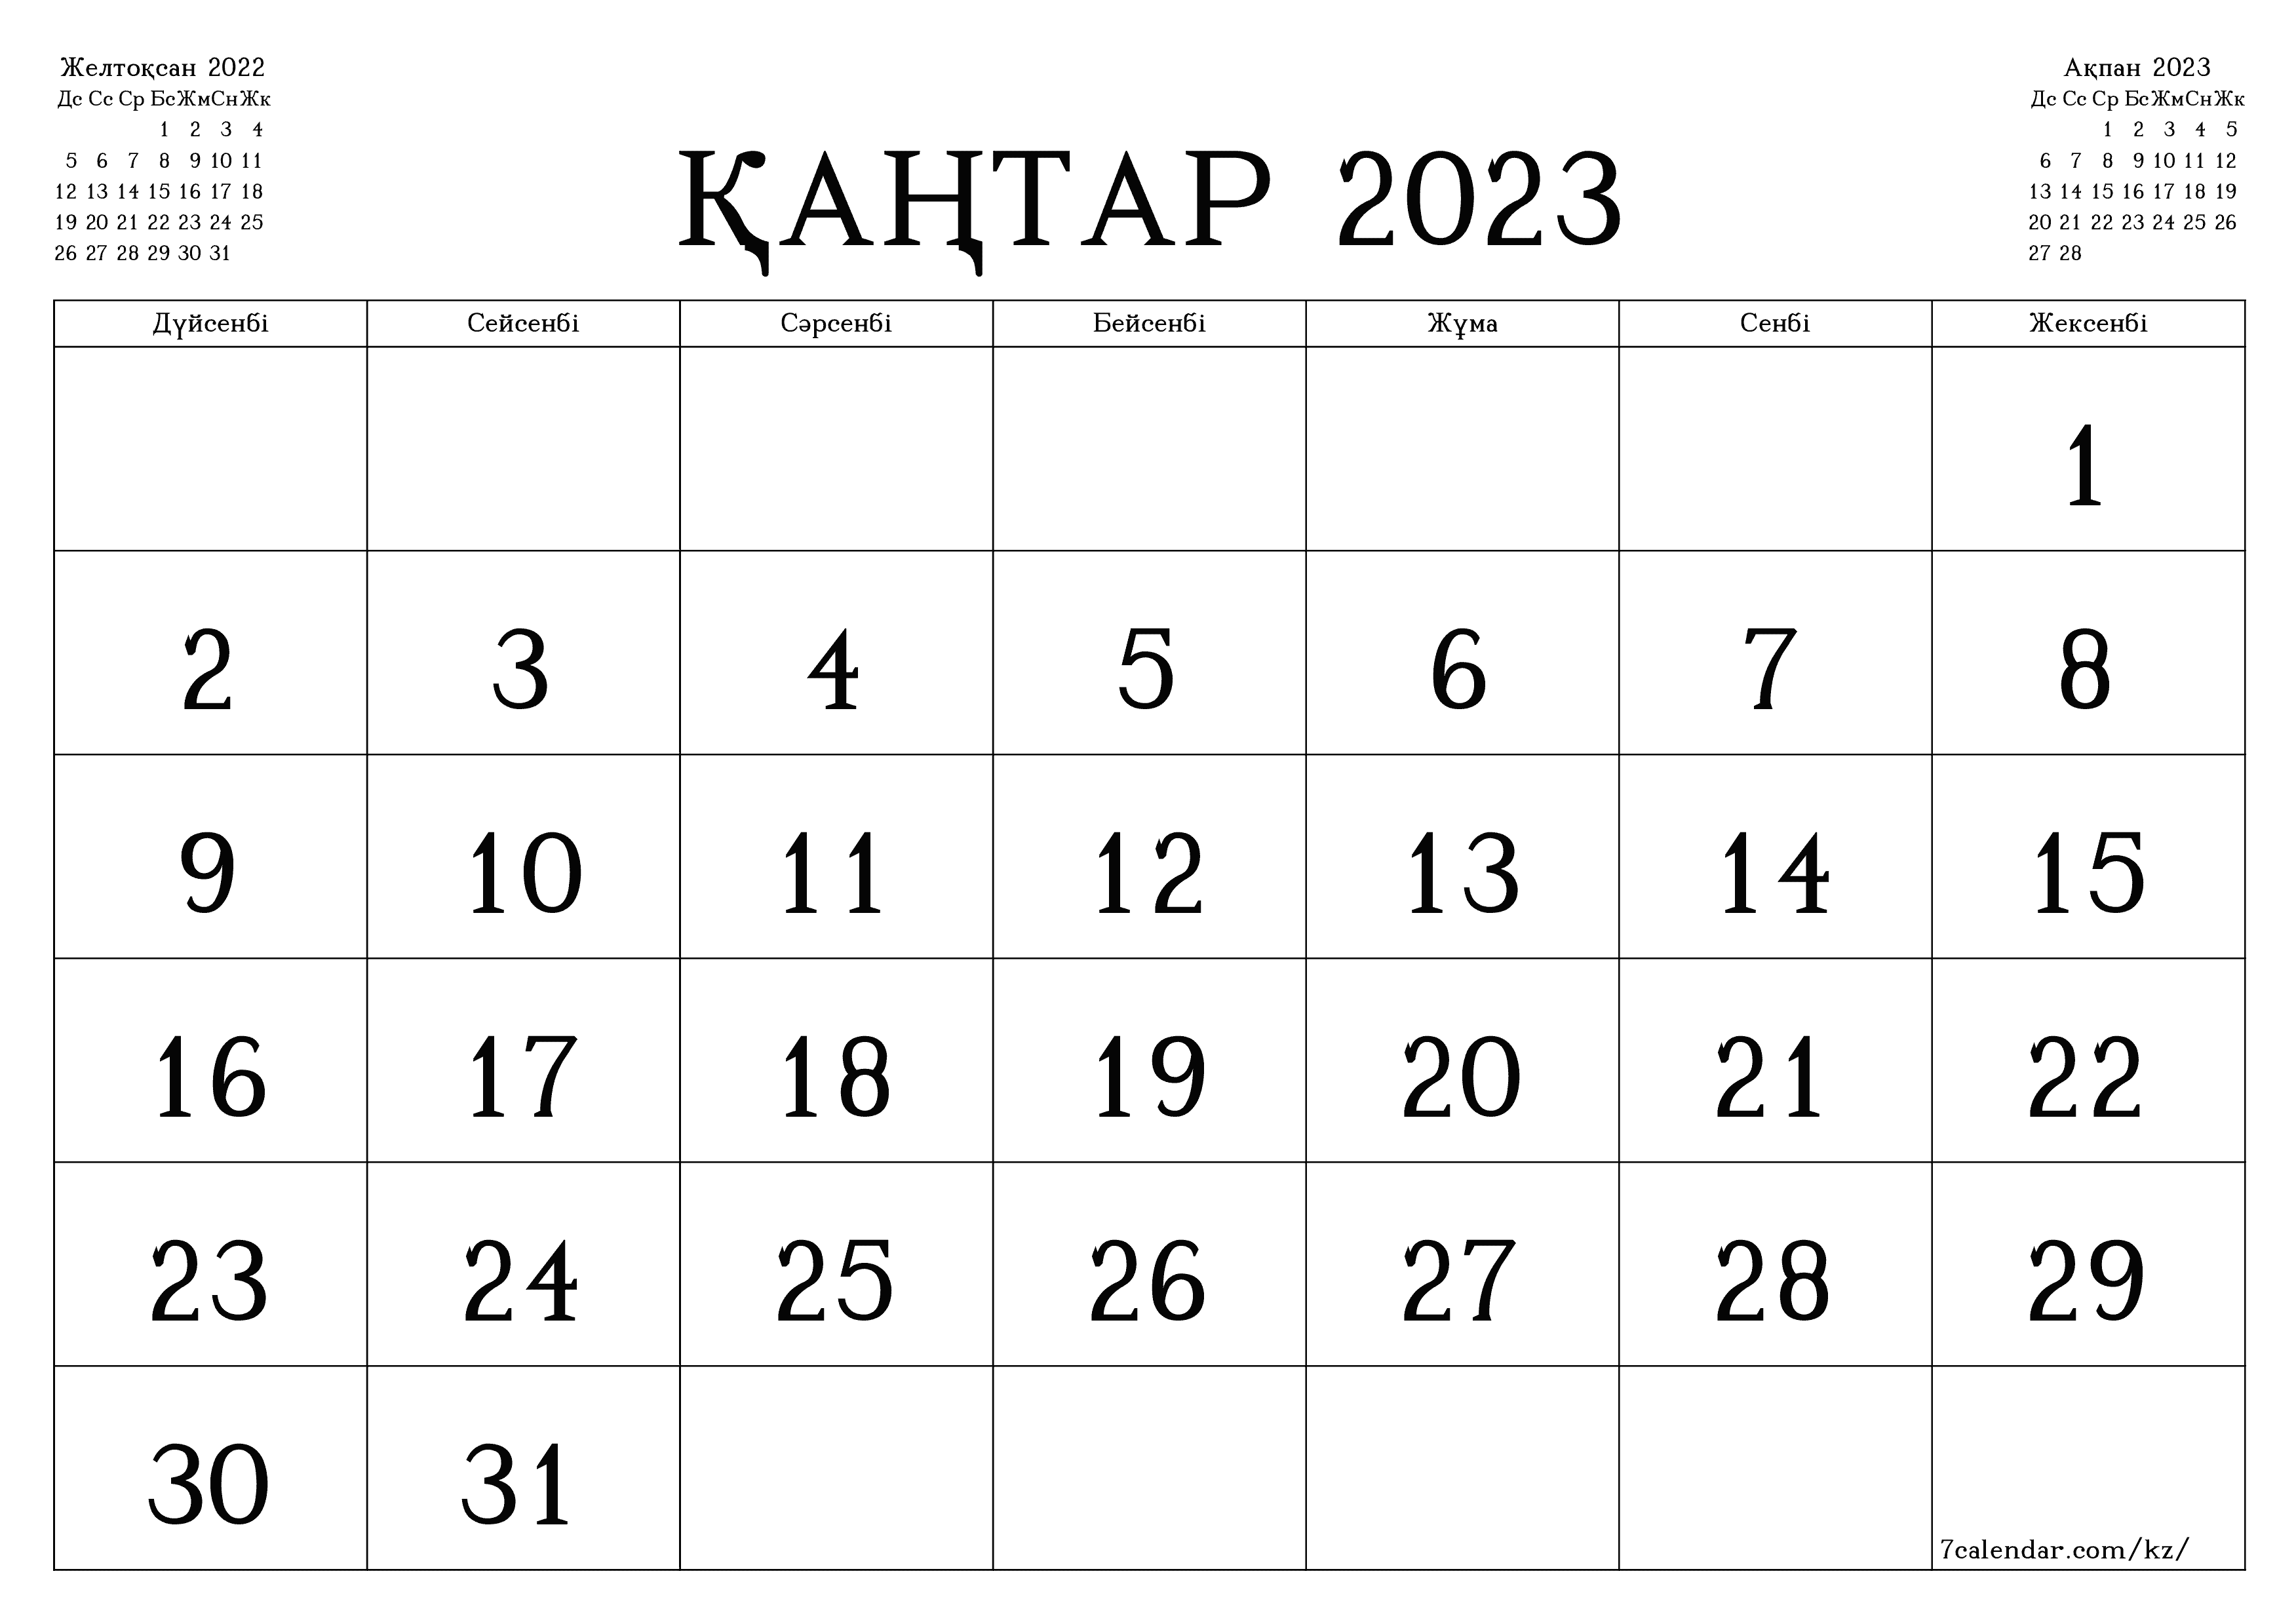 Қаңтар 2023 айдағы айлық жоспарлаушы бос, жазбалармен бірге сақтаңыз және PDF-ке басып шығарыңыз PNG Kazakh - 7calendar.com